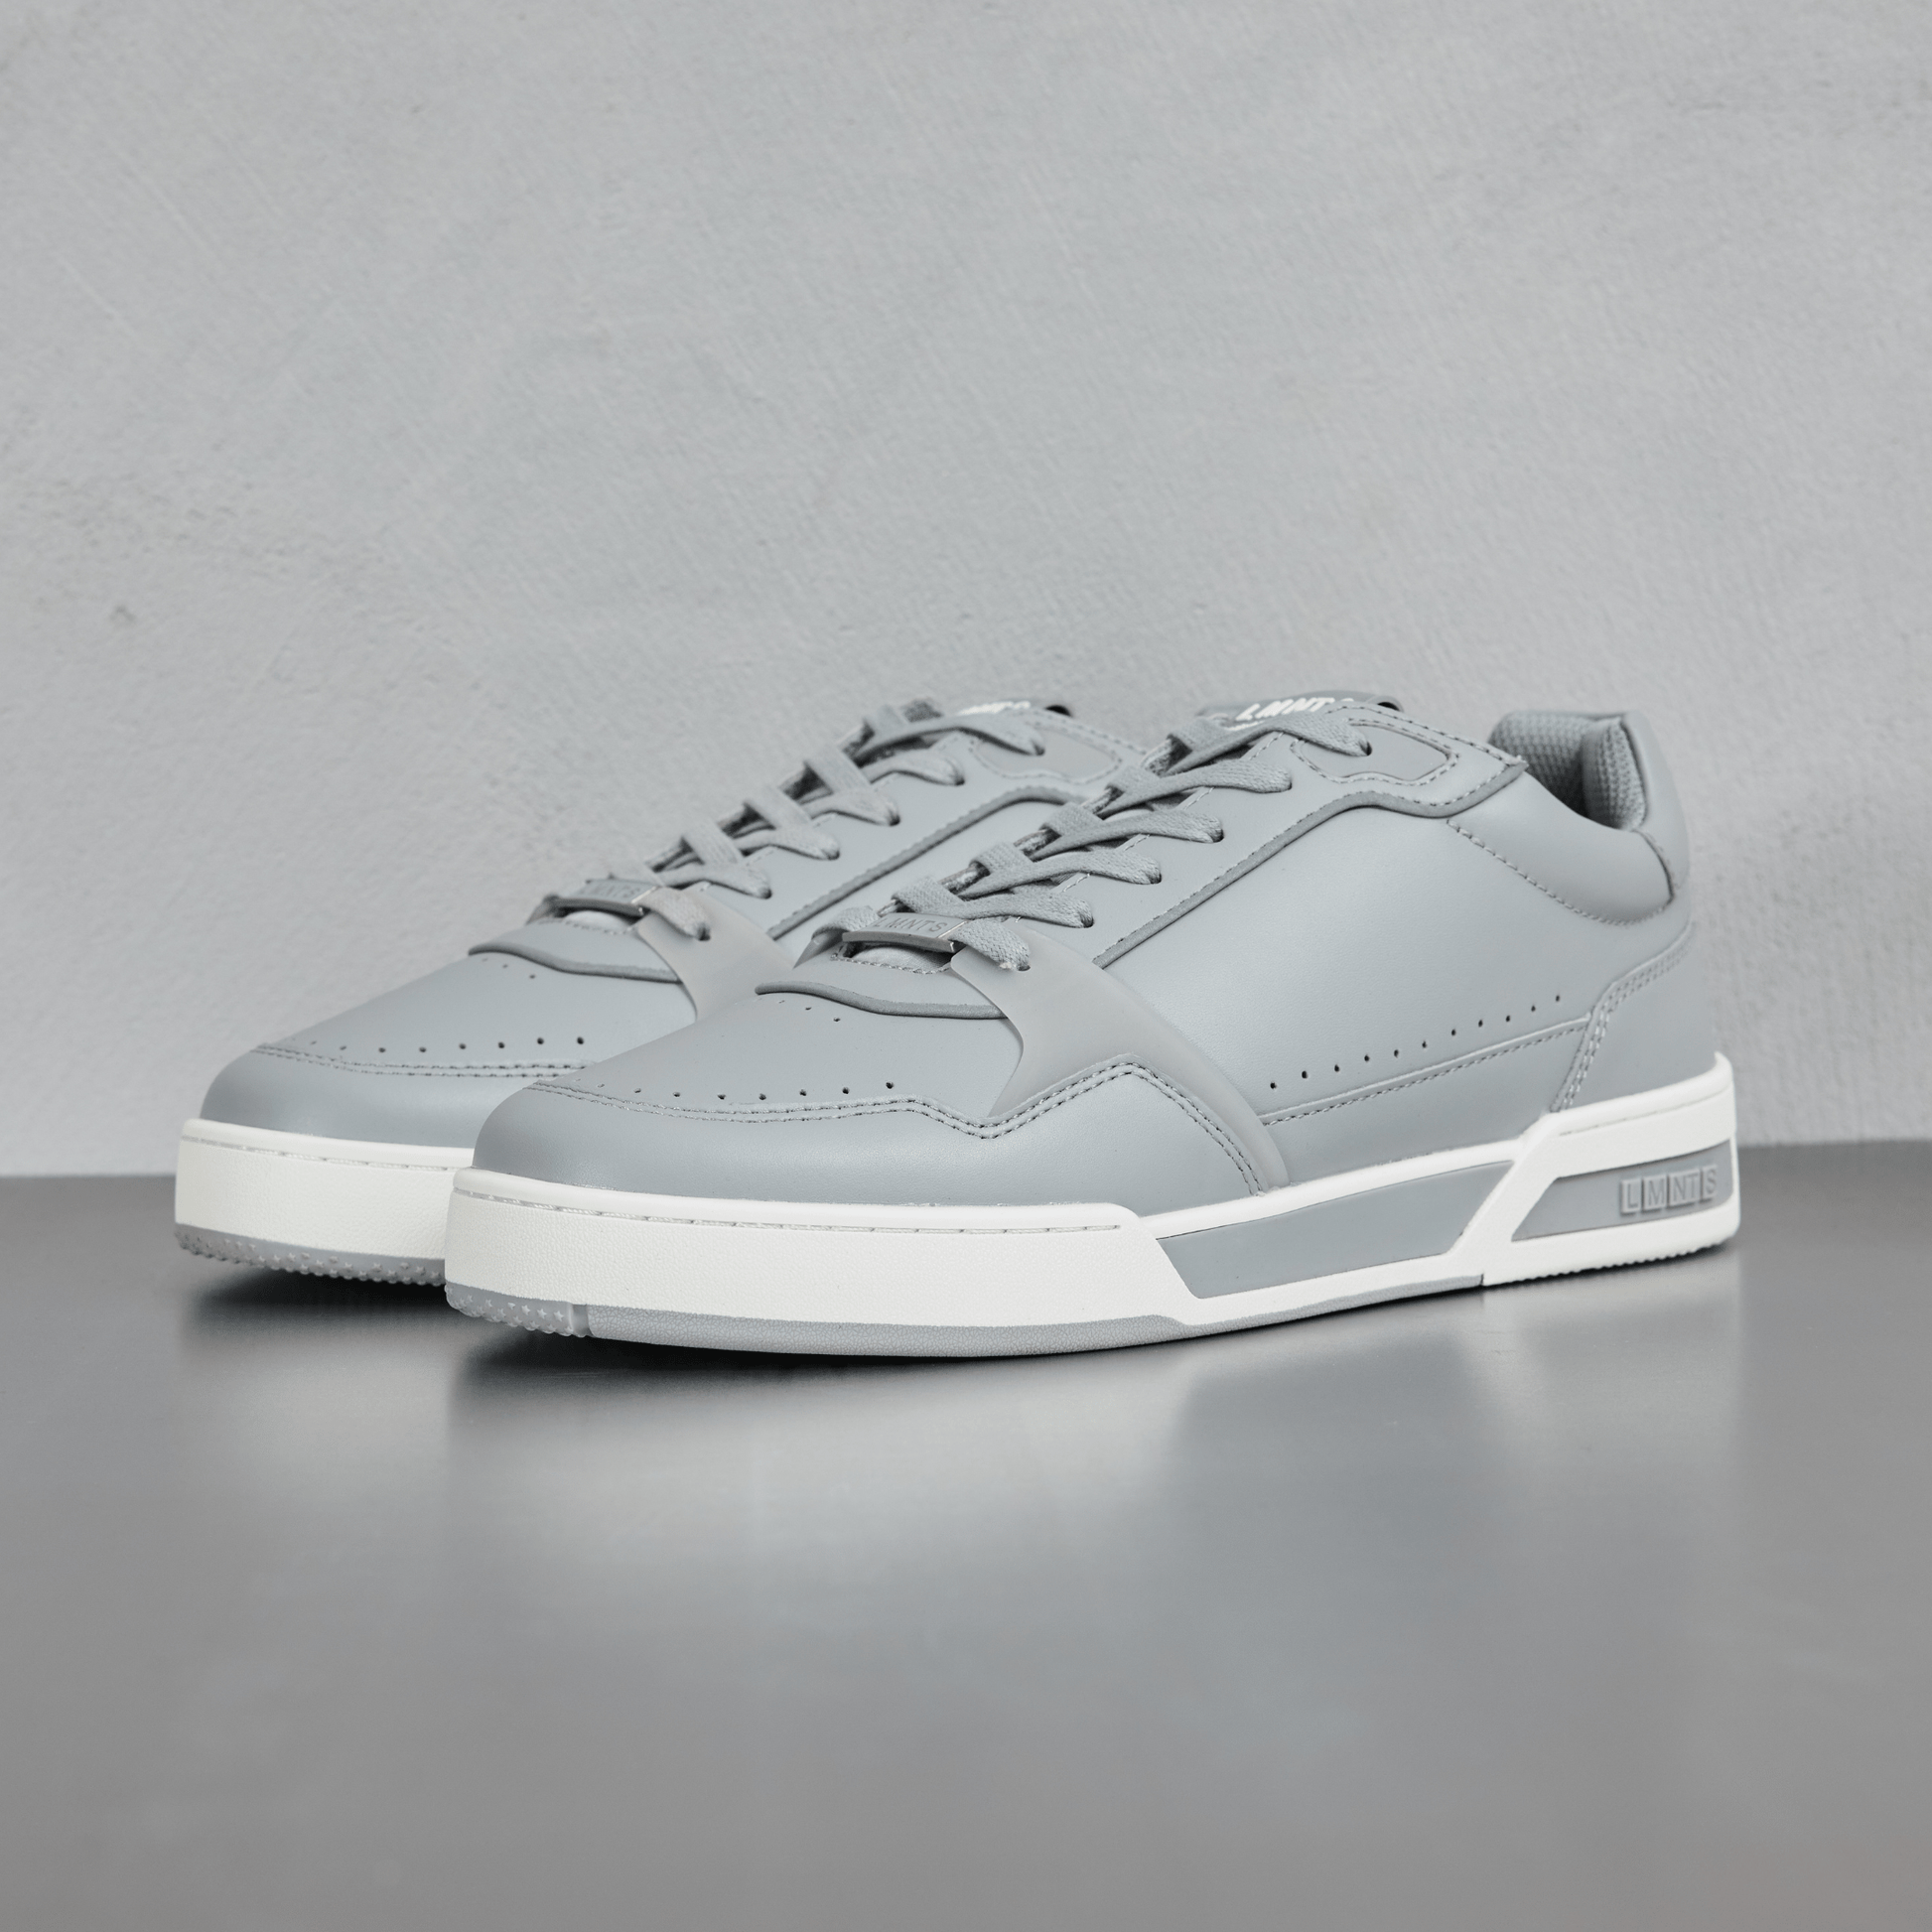 LMNTS Footwear Porter - Grey / Grey